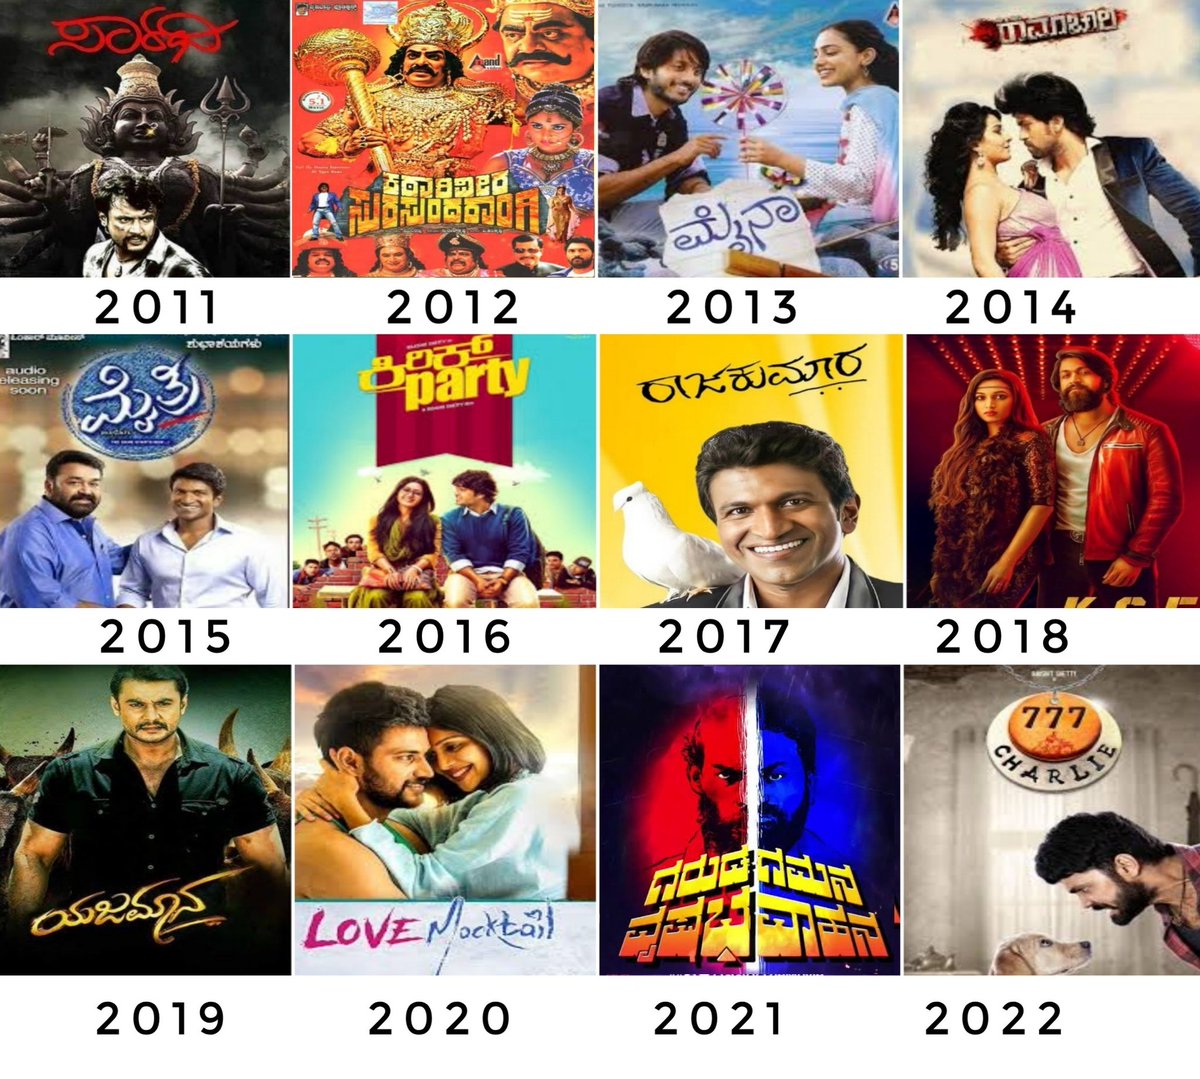 SIIMA - Best Film – Kannada

2011 - #Saarathi
2012 - #KVSS
2013 - #Myna
2014 - #MrAndMrsRamachari
2015 - #Mythri
2016 - #KirikParty
2017 - #RajaKumara
2018 - #KGF1
2019 - #Yajamana
2020 - #LoveMocktail
2021 - #GGVV
2022 - #Charlie777

#SIIMAAwards2023 #YashBOSS #Yash19